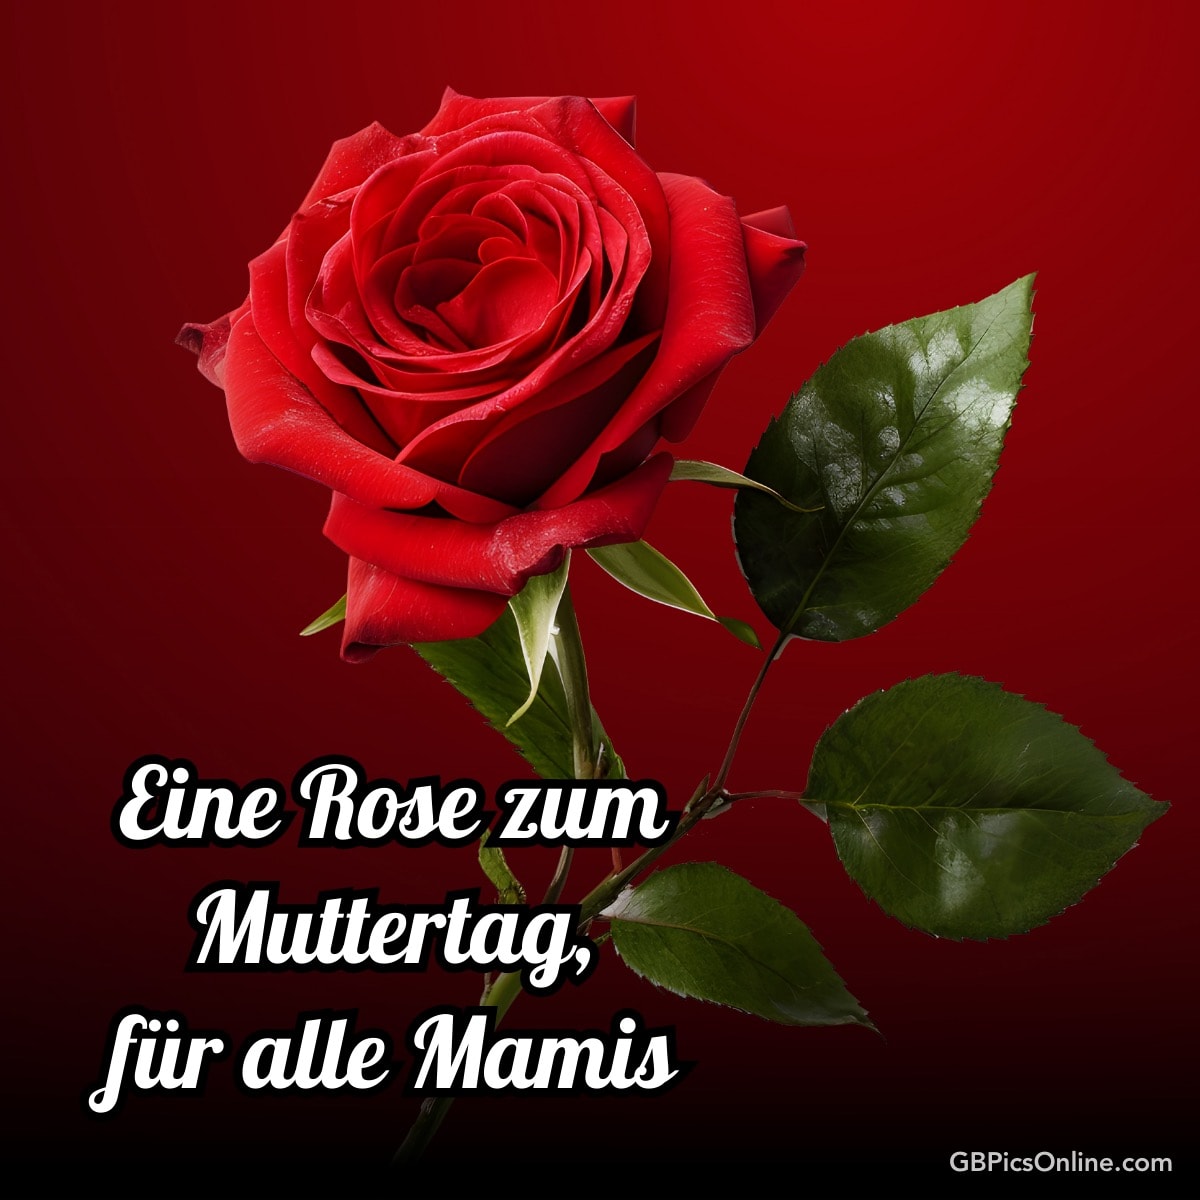 Eine rote Rose mit dem Text „Eine Rose zum Muttertag, für alle Mamis“ vor rotem Hintergrund